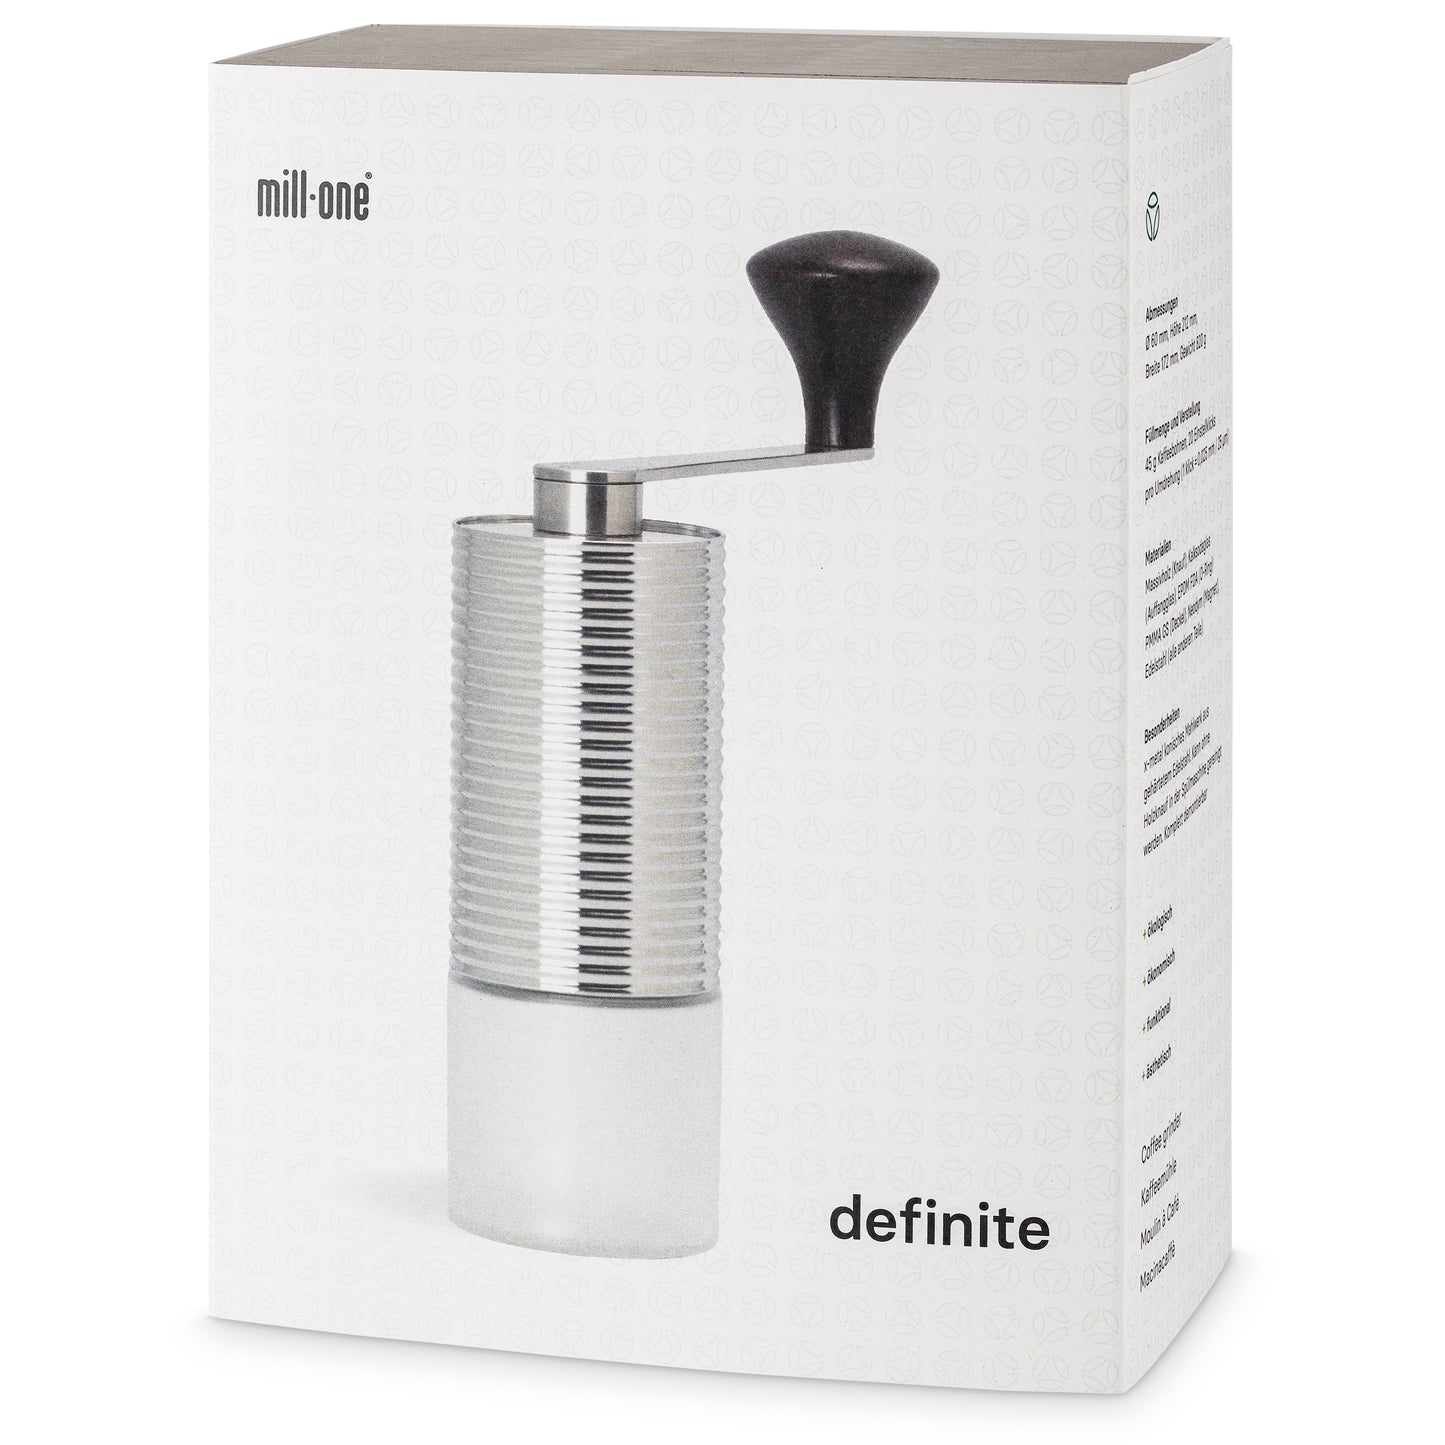 millone® definite coffee grinder, stainless steel